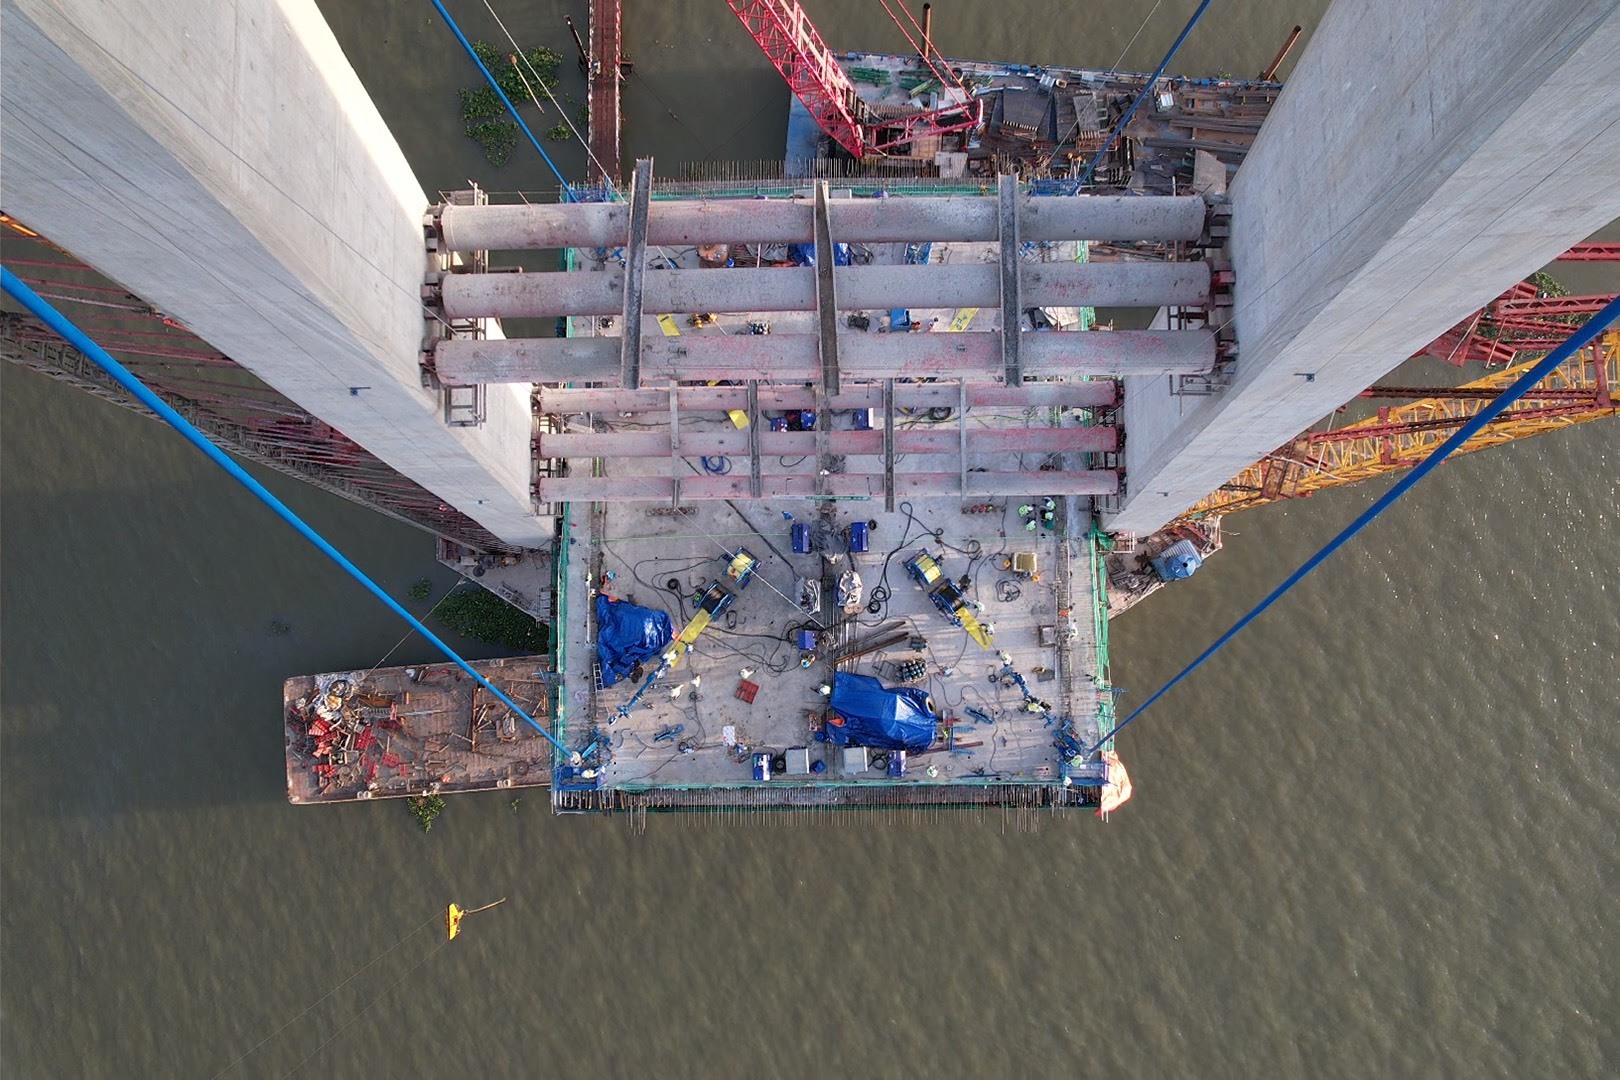 Ghi nhận của Báo Lao Động, chiều ngày 31.1 trên công trình Cầu Mỹ Thuận 2, không khí lao động của những kỹ sư, công nhân đang rất khẩn trương, gấp rút làm việc để phấn đấu hoàn thành đưa dự án vào sử dụng sớm nhất.